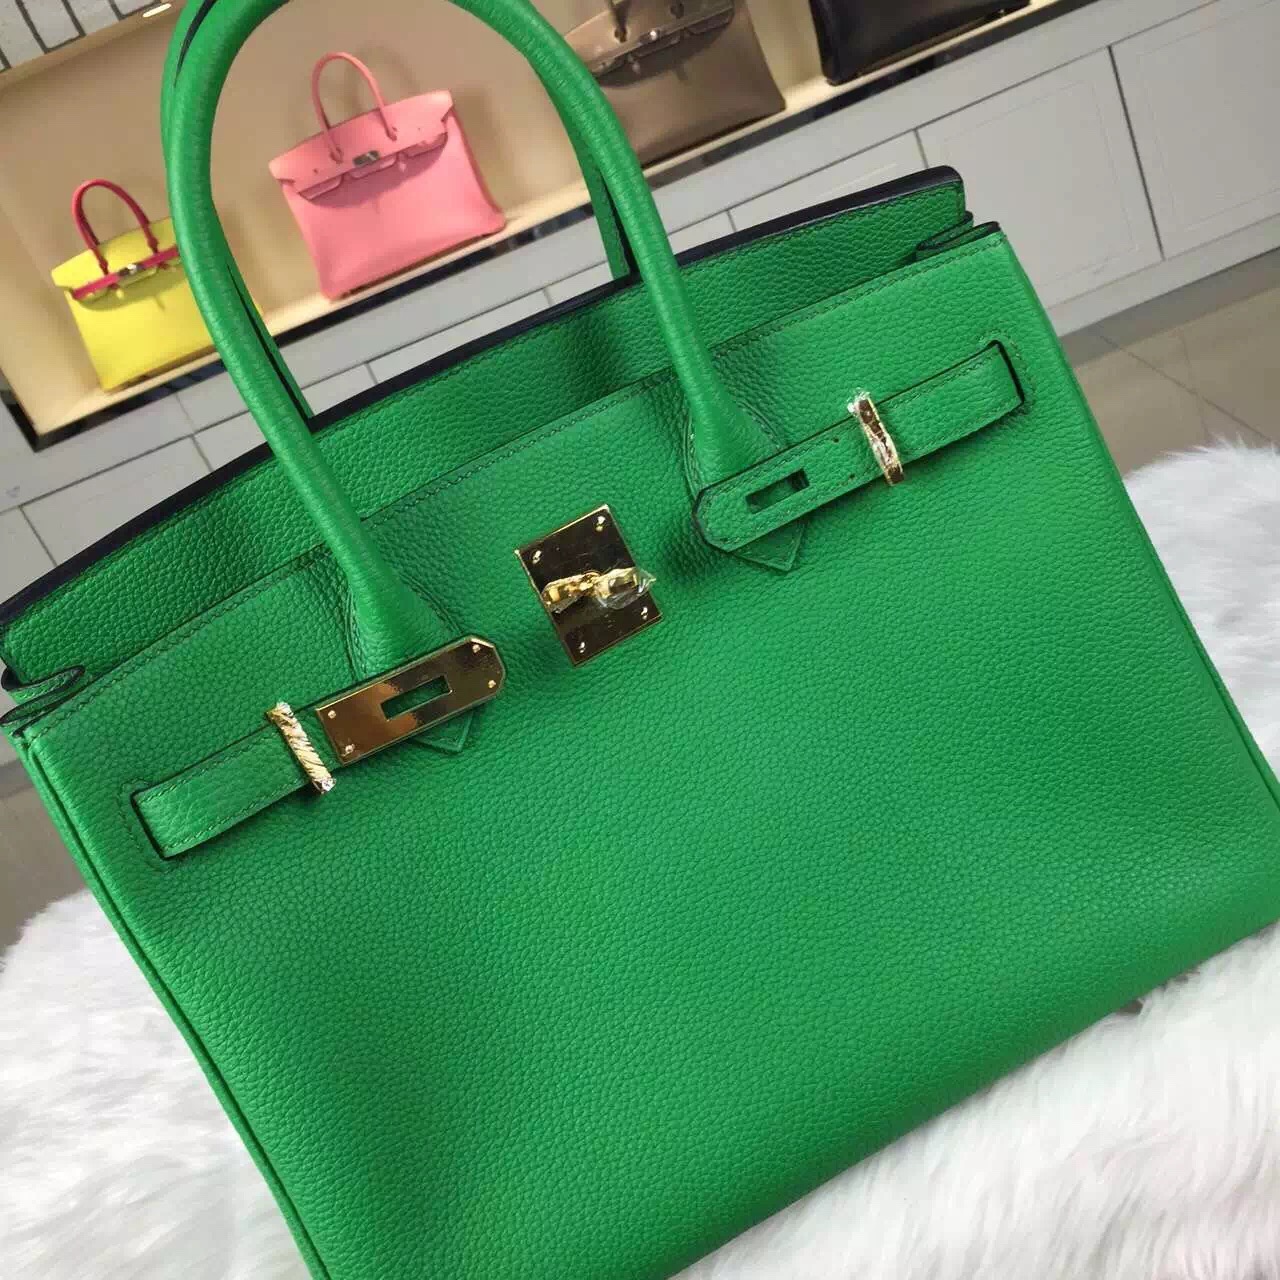 New Fashion Hermes France Togo Calfskin Leather Birkin Bag 30cm in 1K Bamboo Green